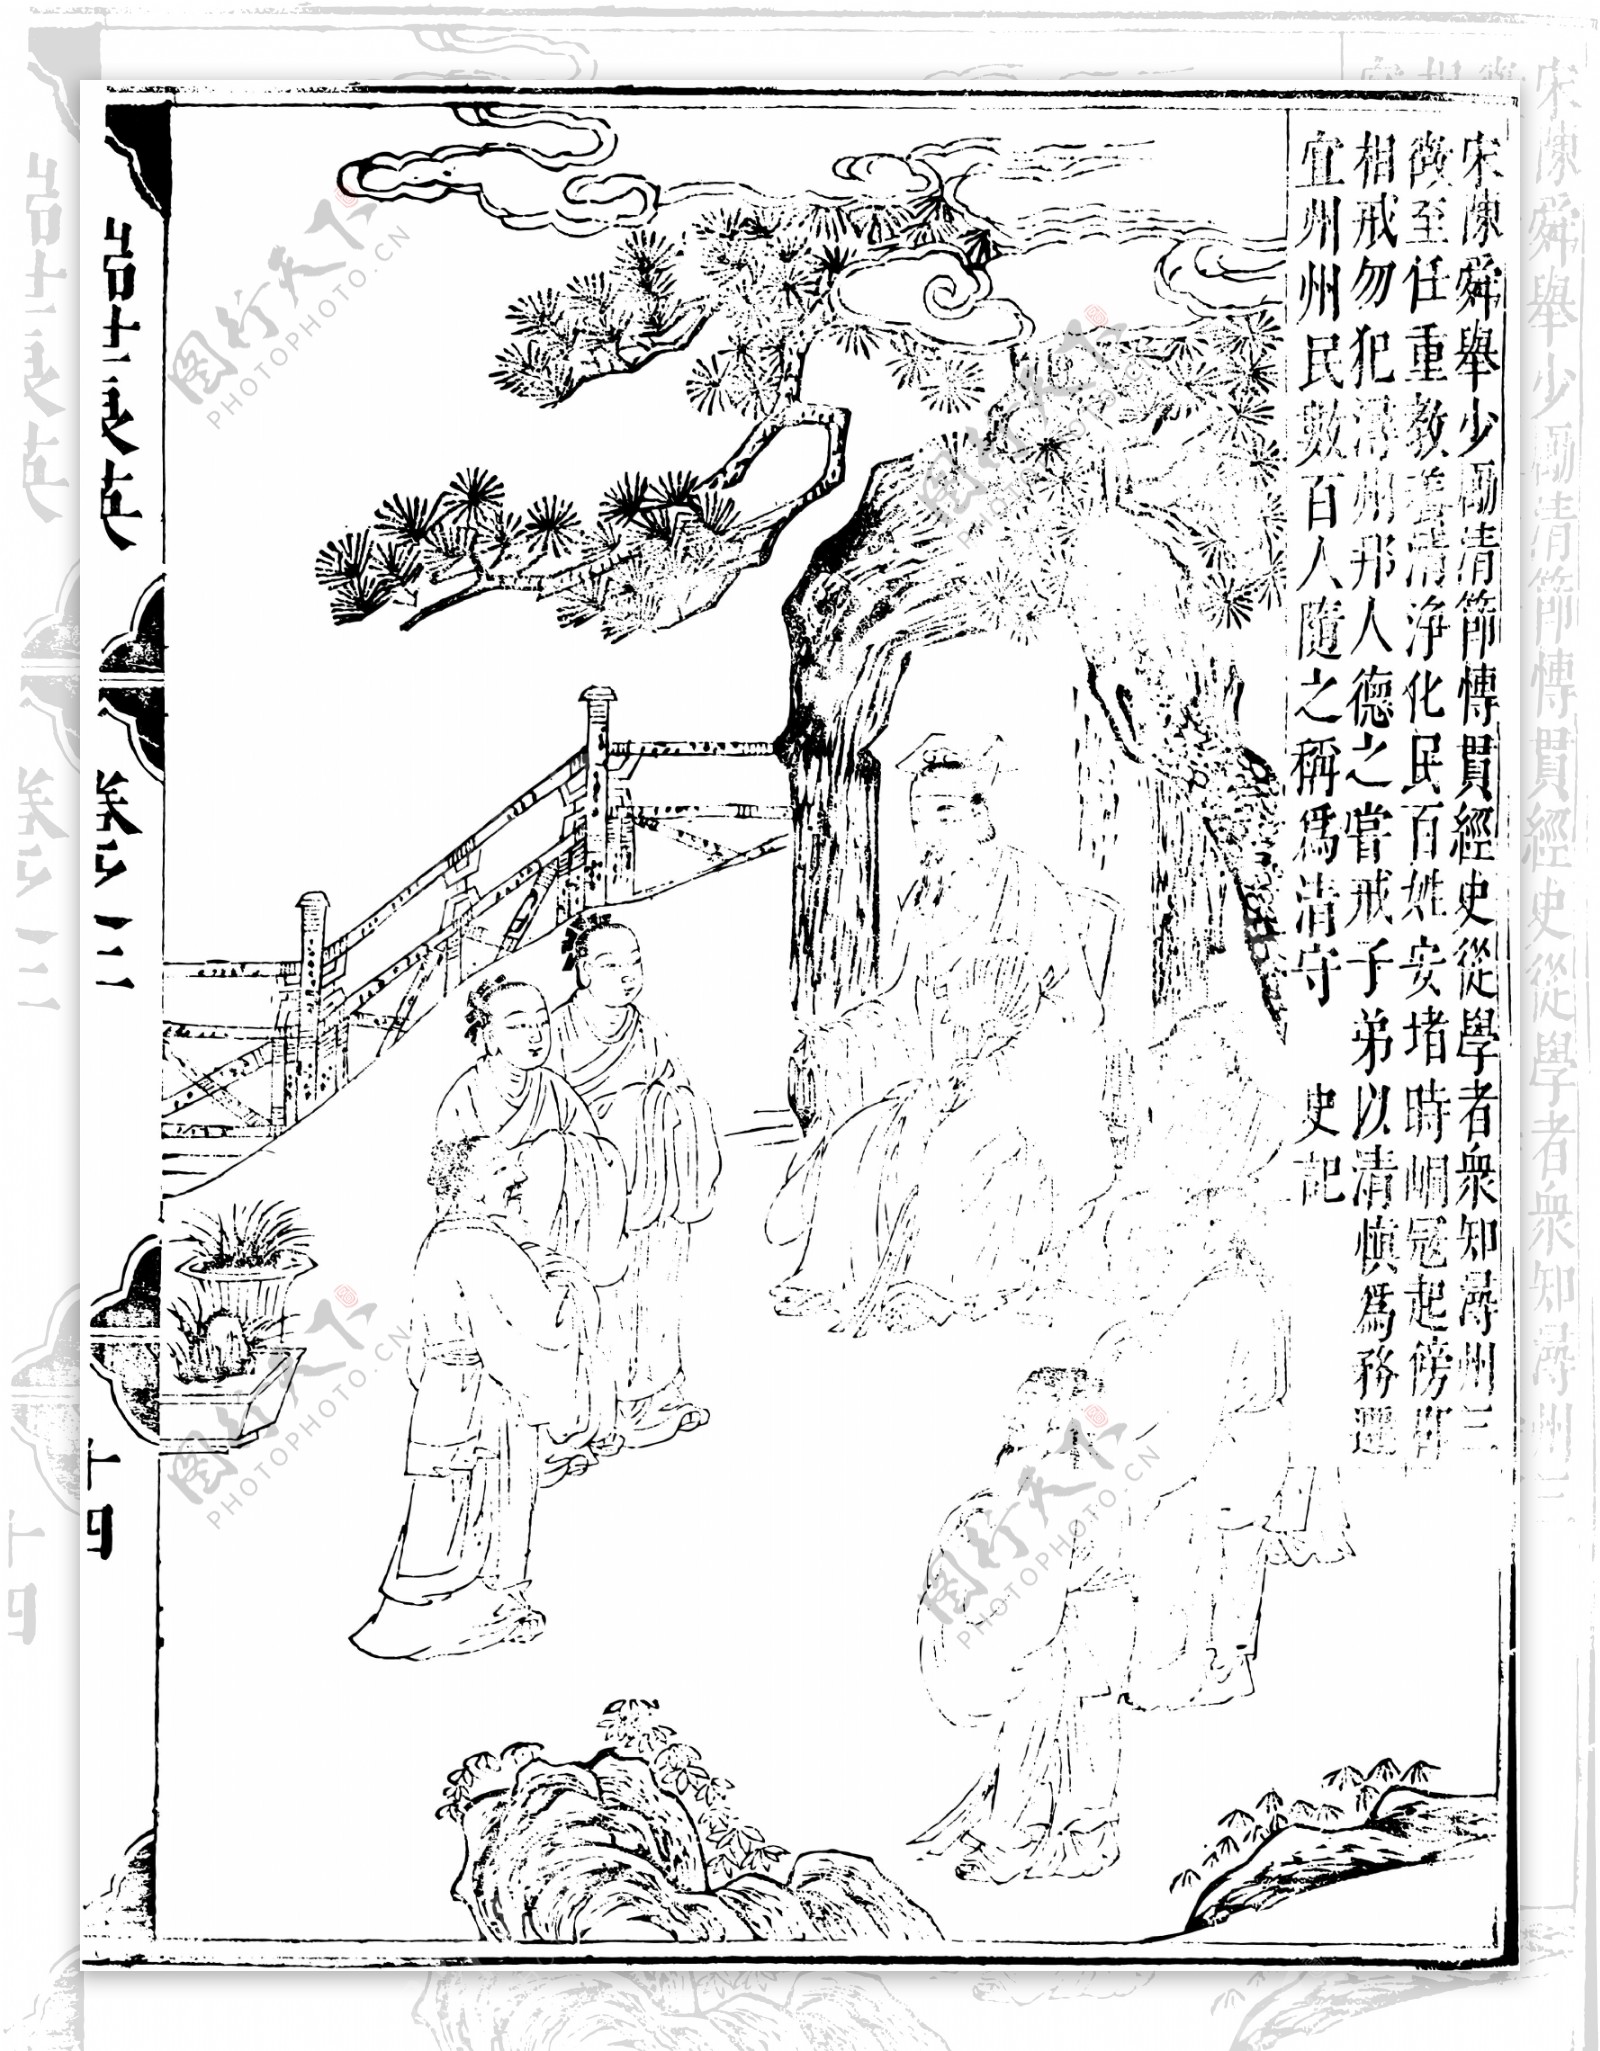 瑞世良英木刻版画中国传统文化87